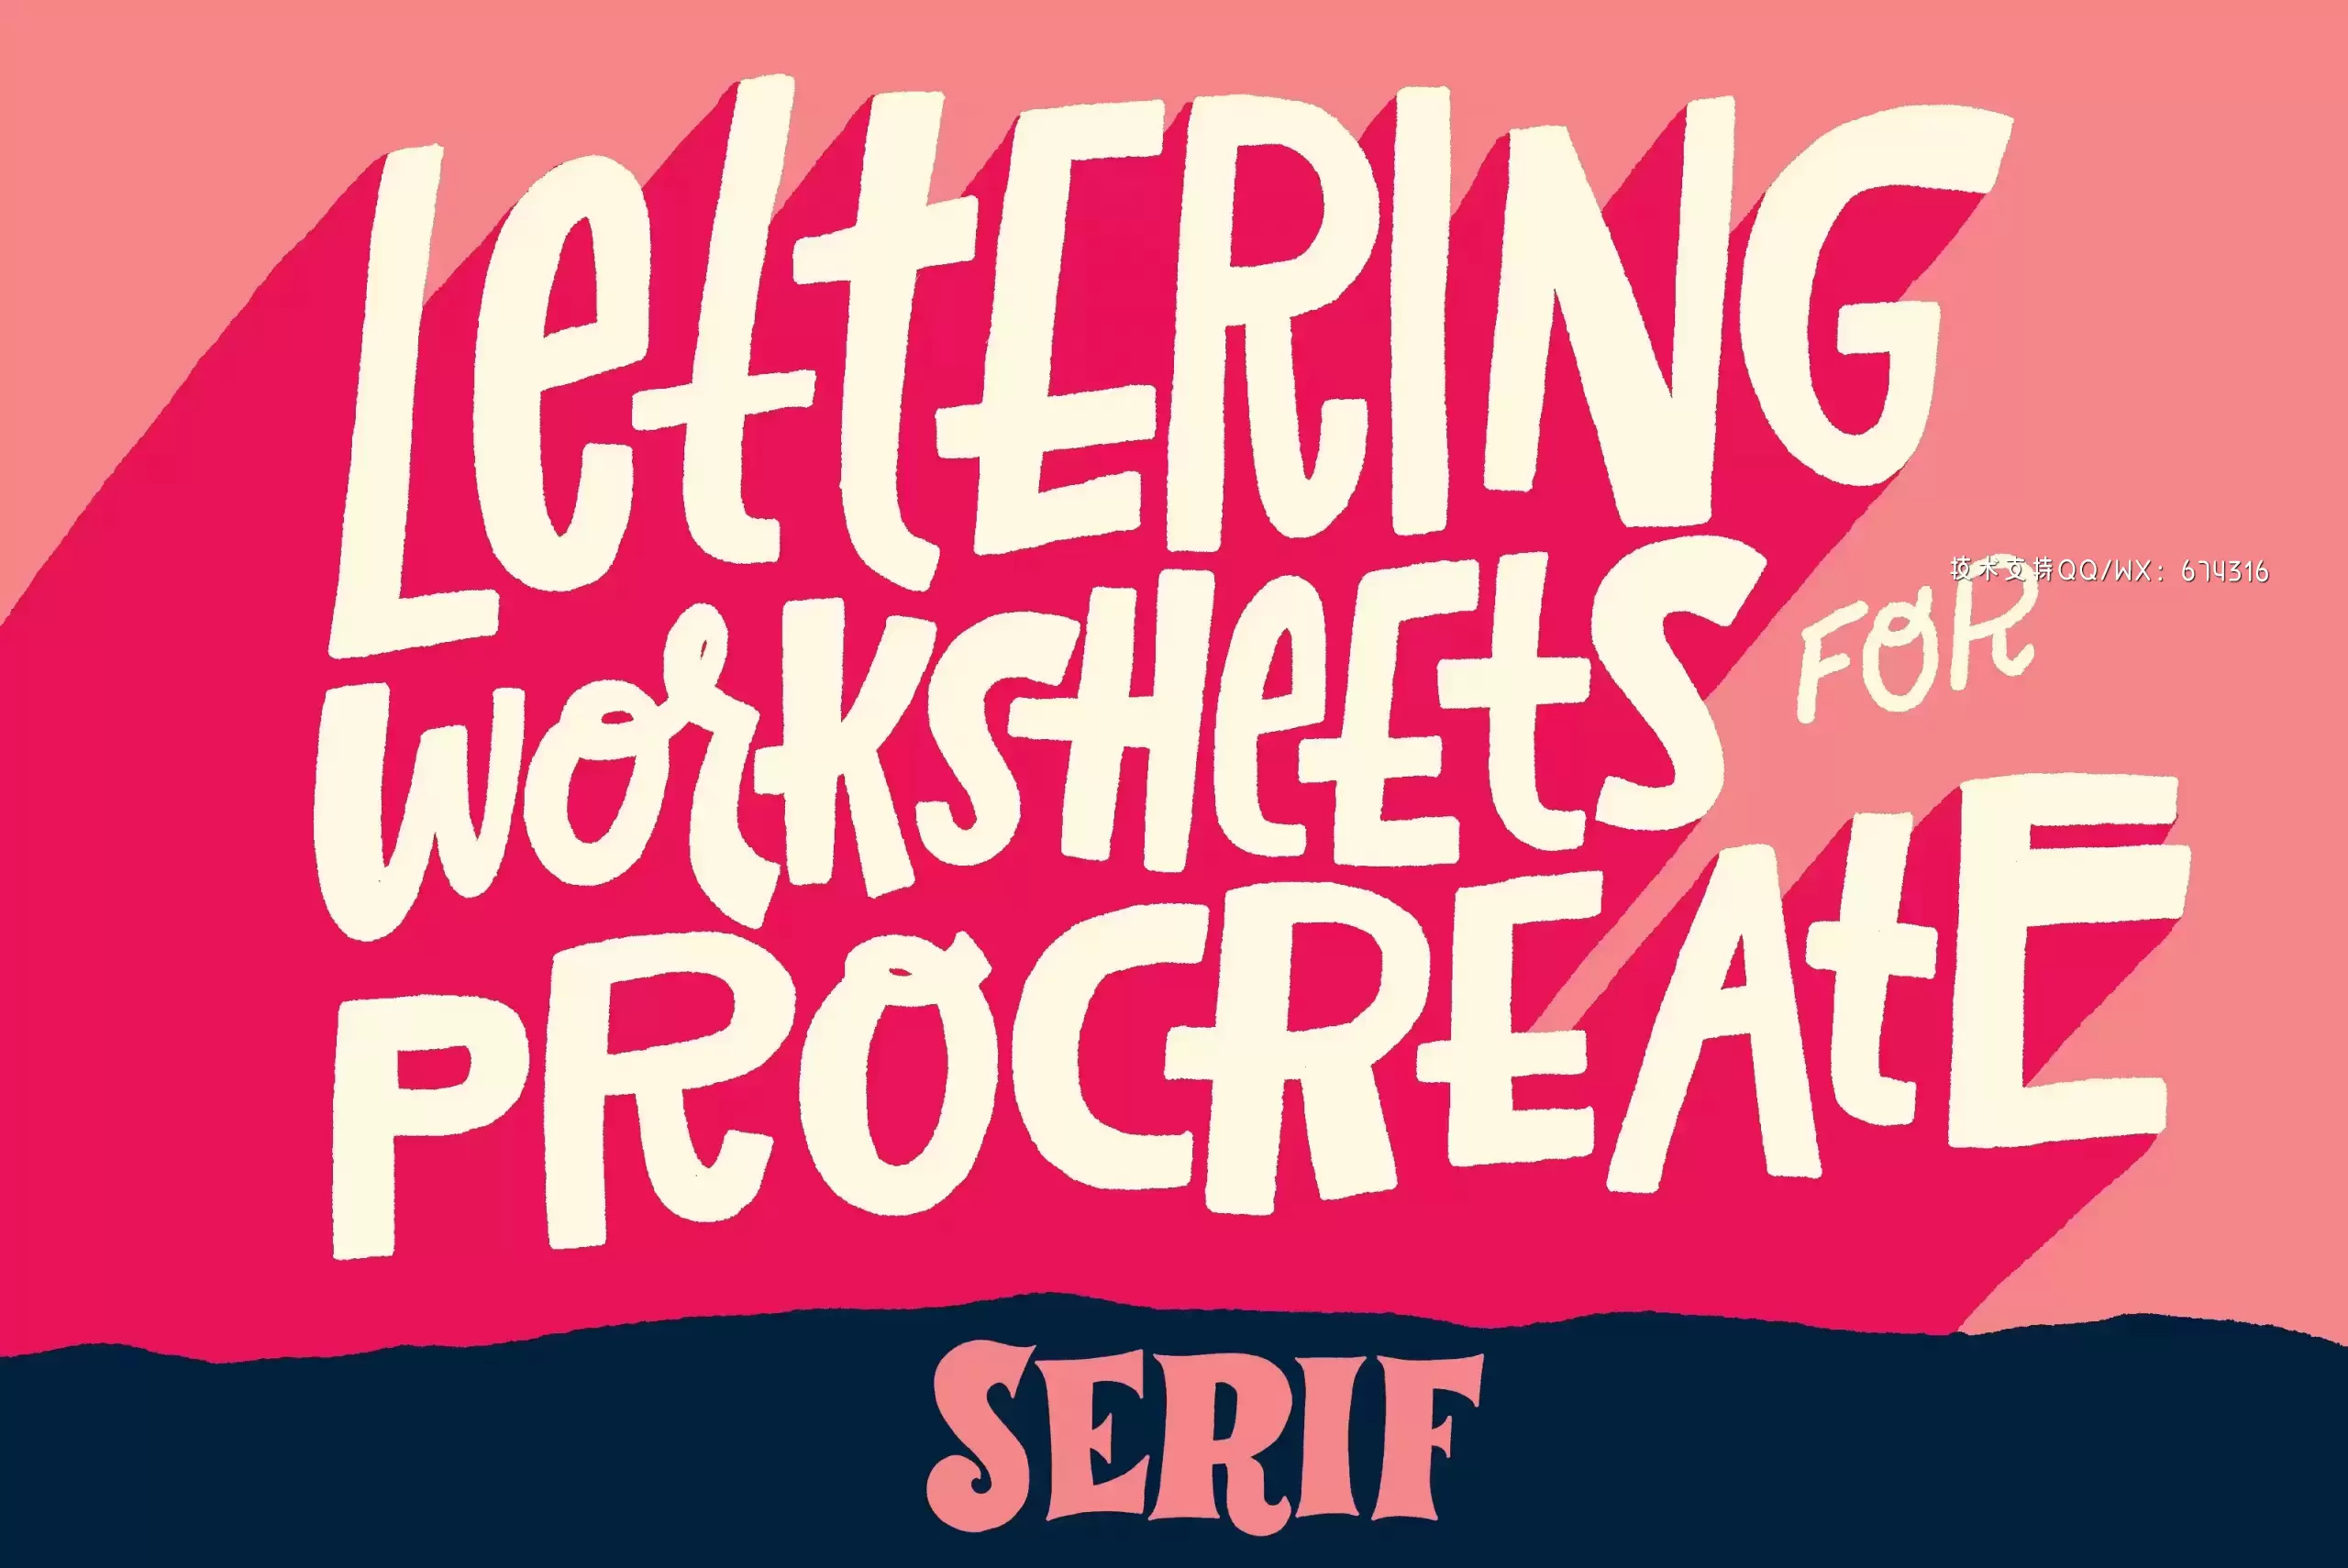 手写字体下载 Serif Lettering Worksheet免费下载